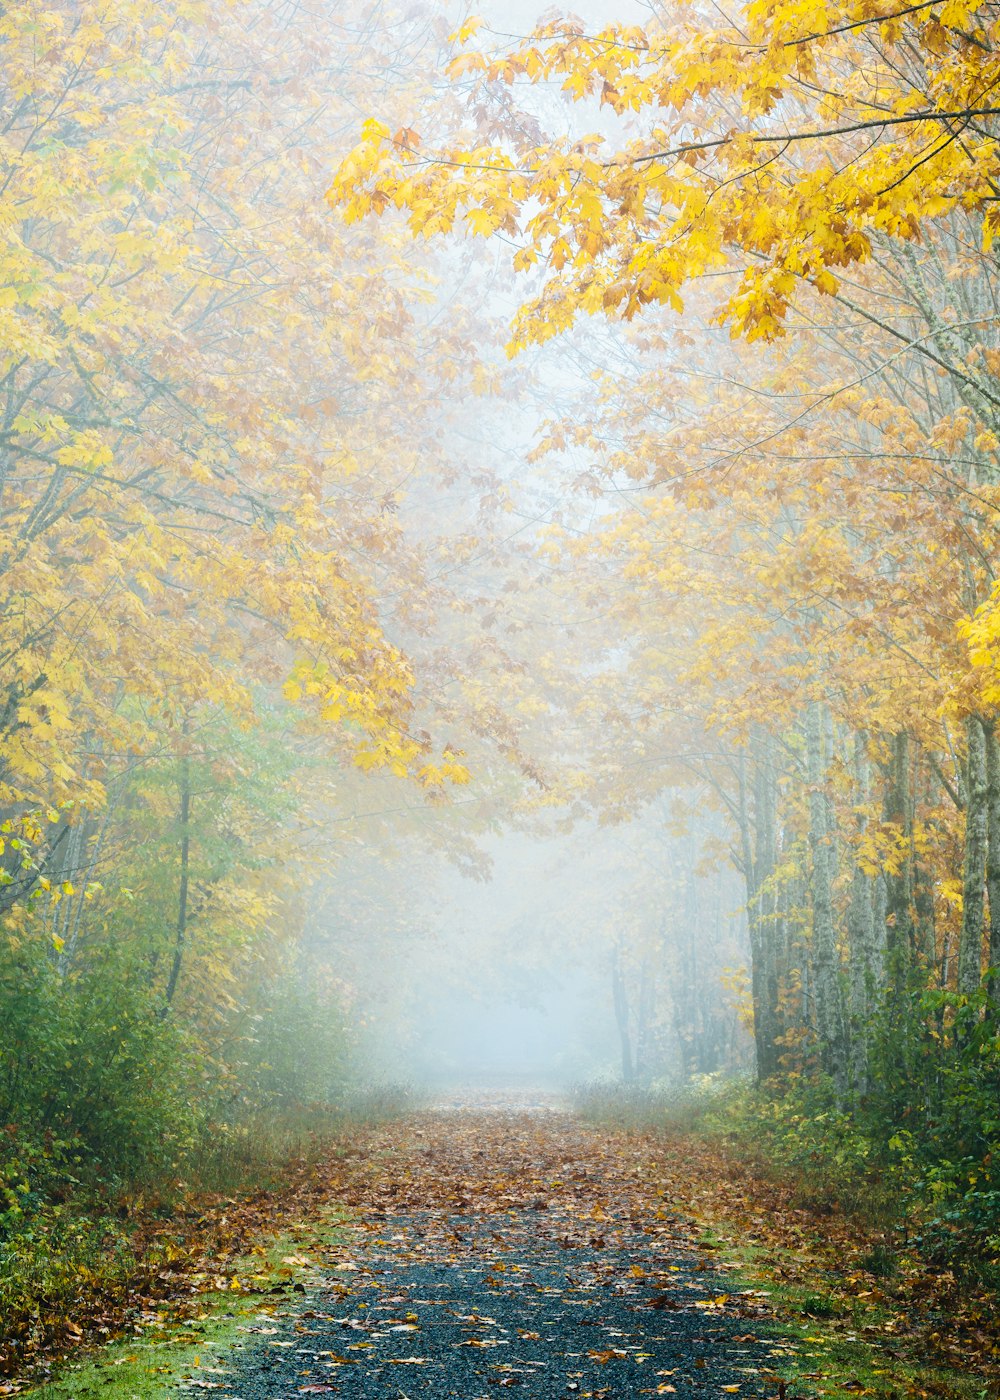 strada grigia circondata da alberi dalle foglie gialle